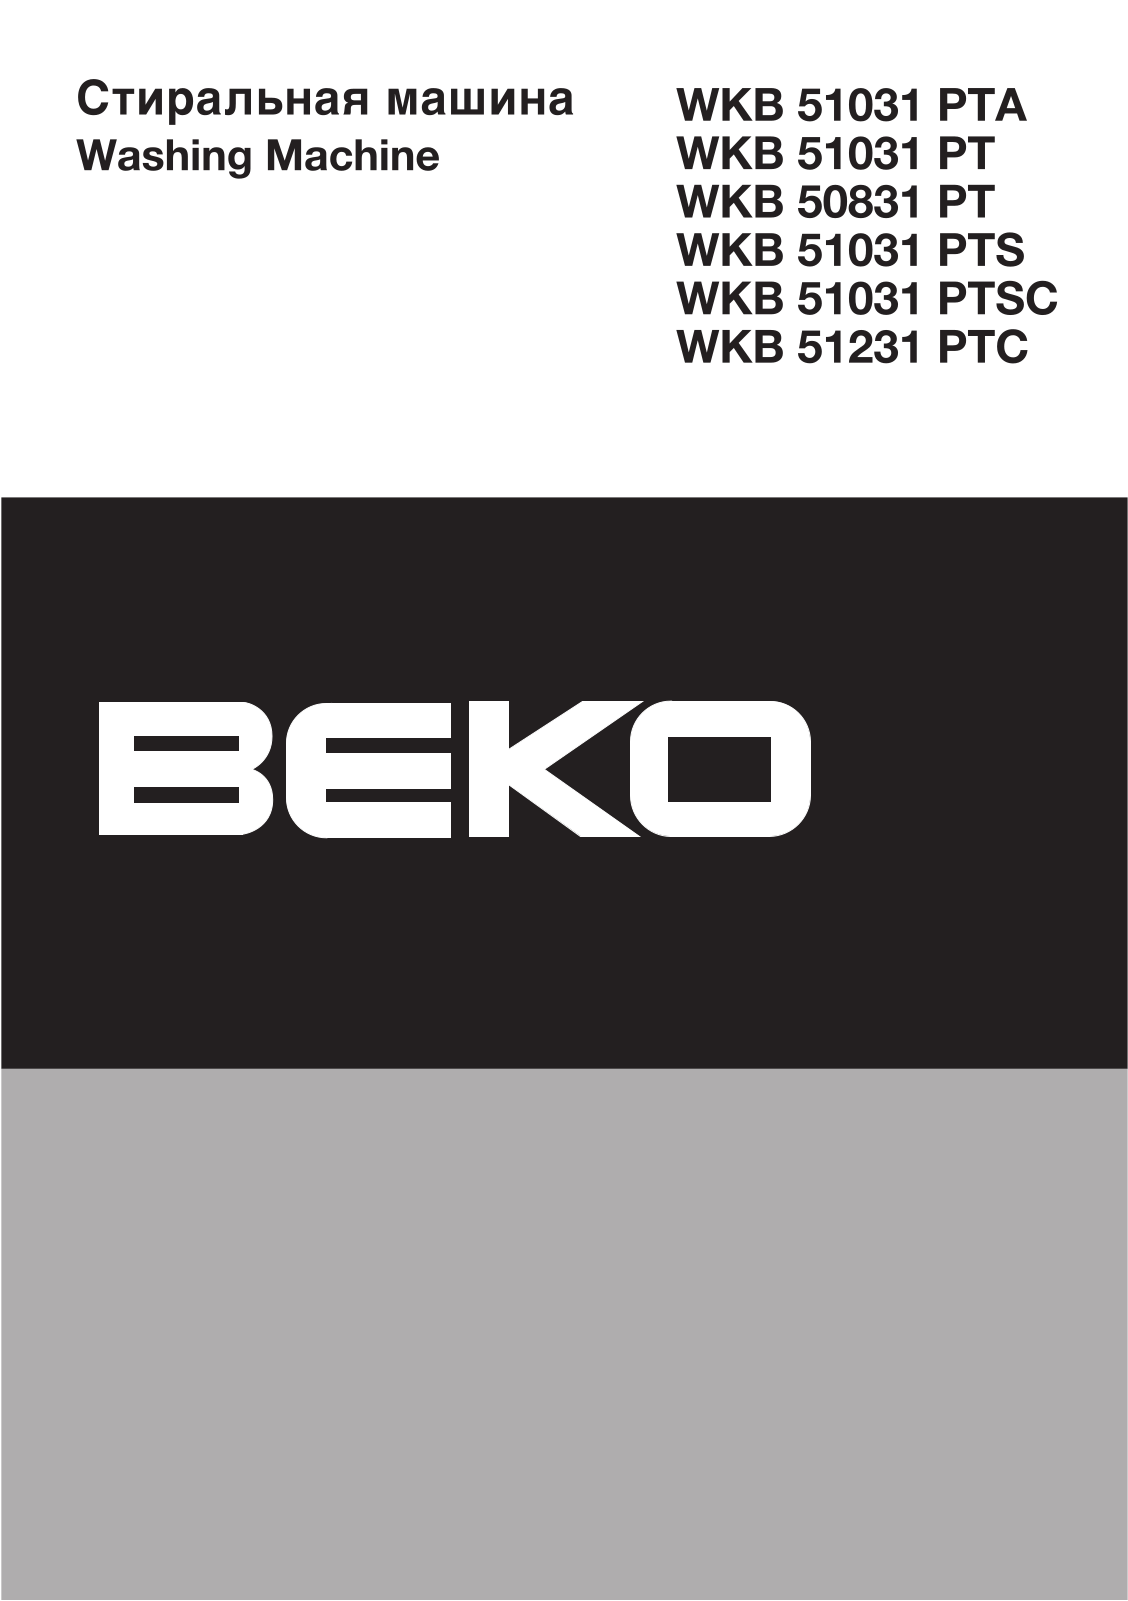 Beko WKB 51031 PTA User Manual